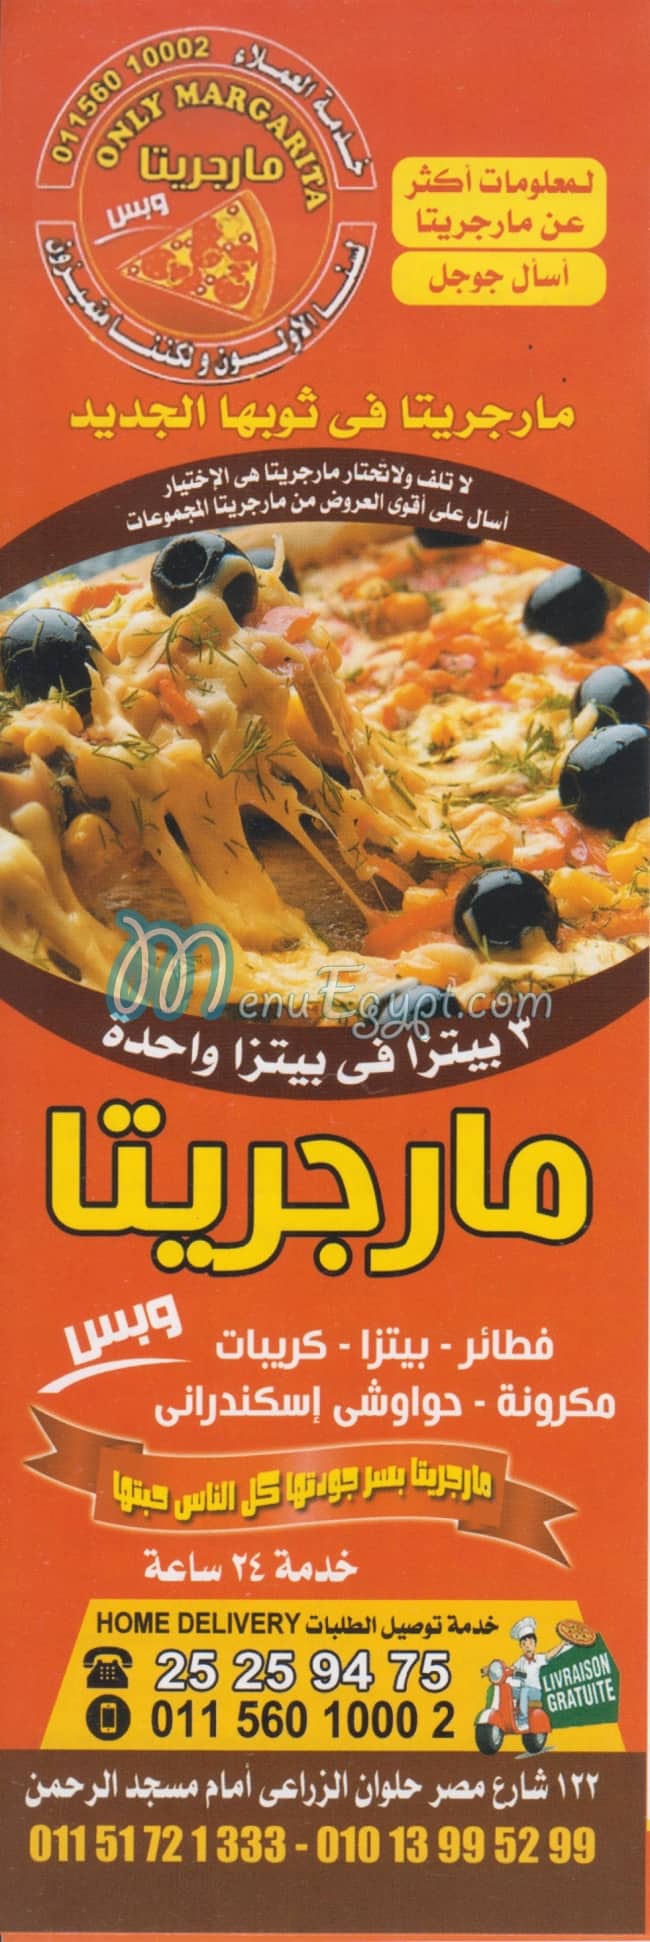 Margrita Dar El salam menu Egypt